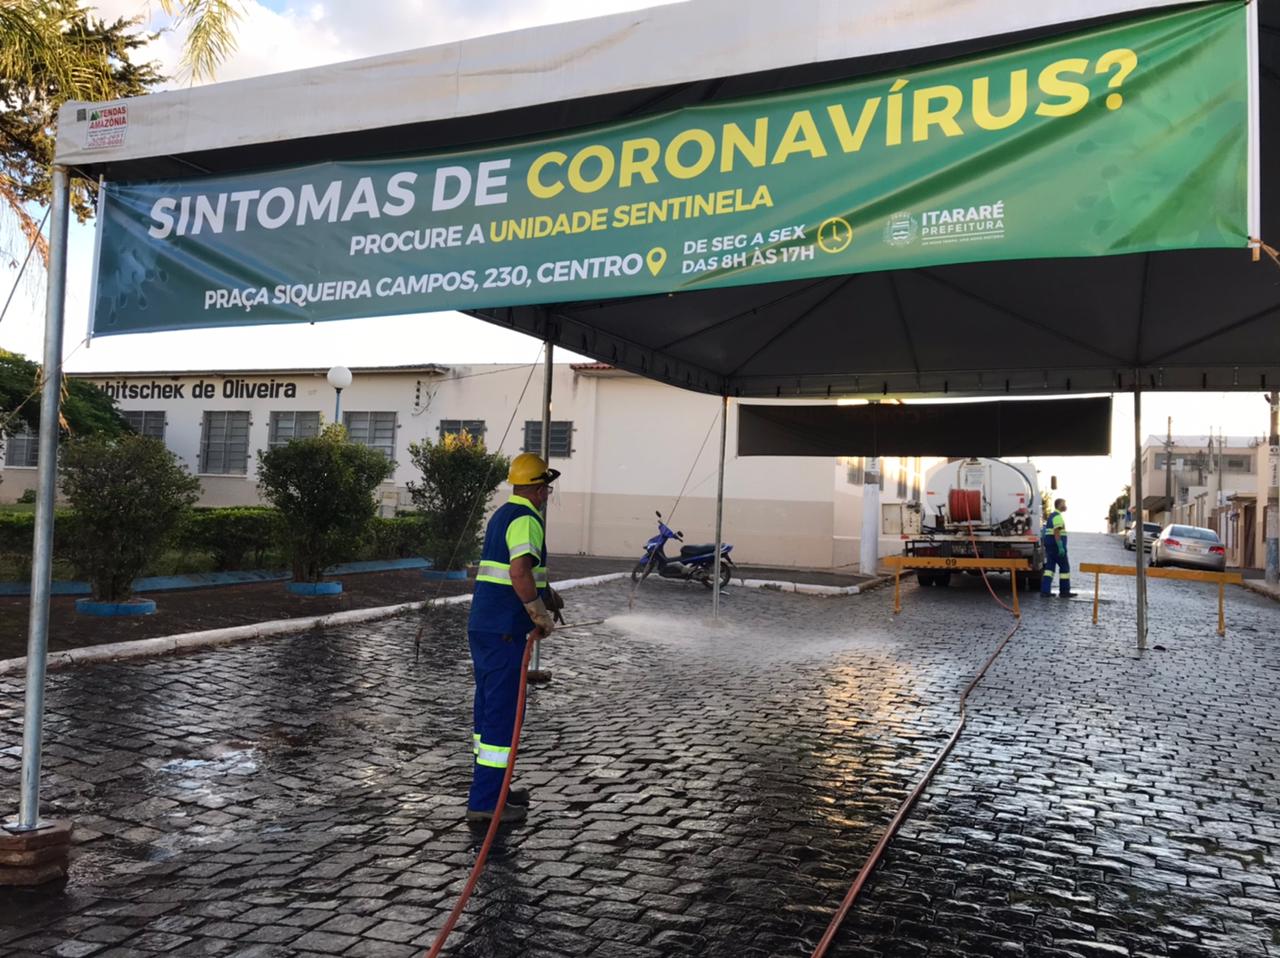 Prefeitura de Itararé (SP) realiza desinfecção da Unidade Sentinela